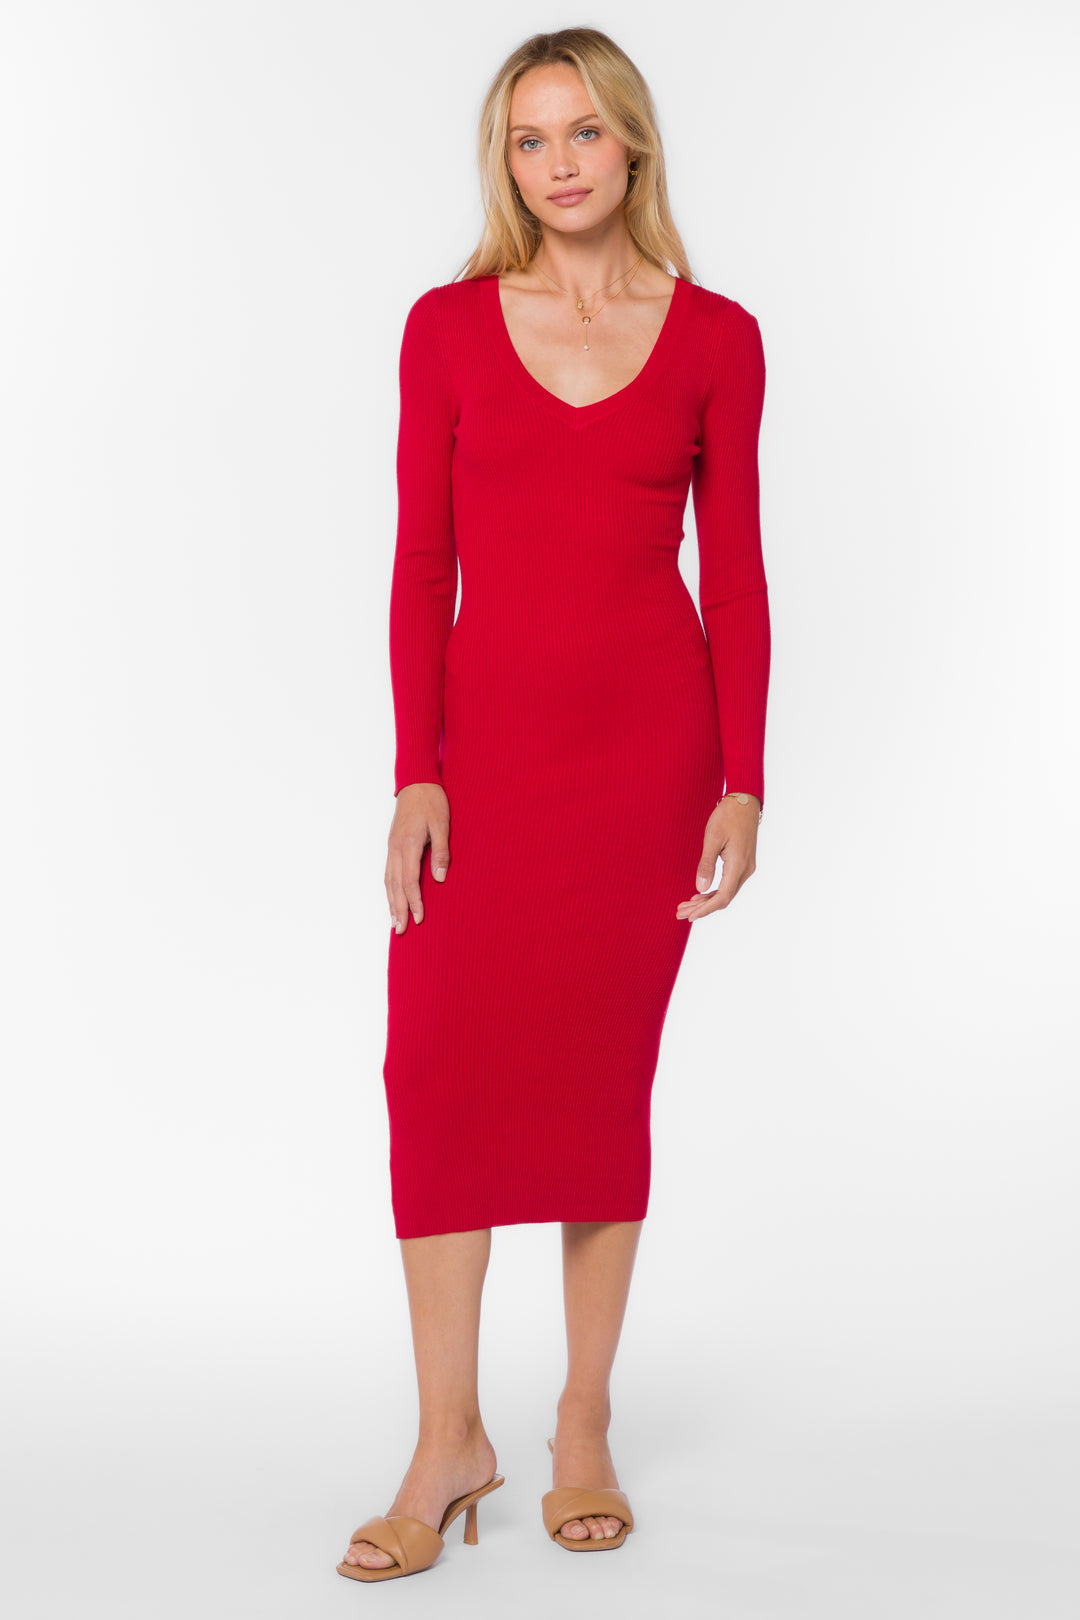 Rasha Red Pepper Dress - Dresses - Velvet Heart Clothing